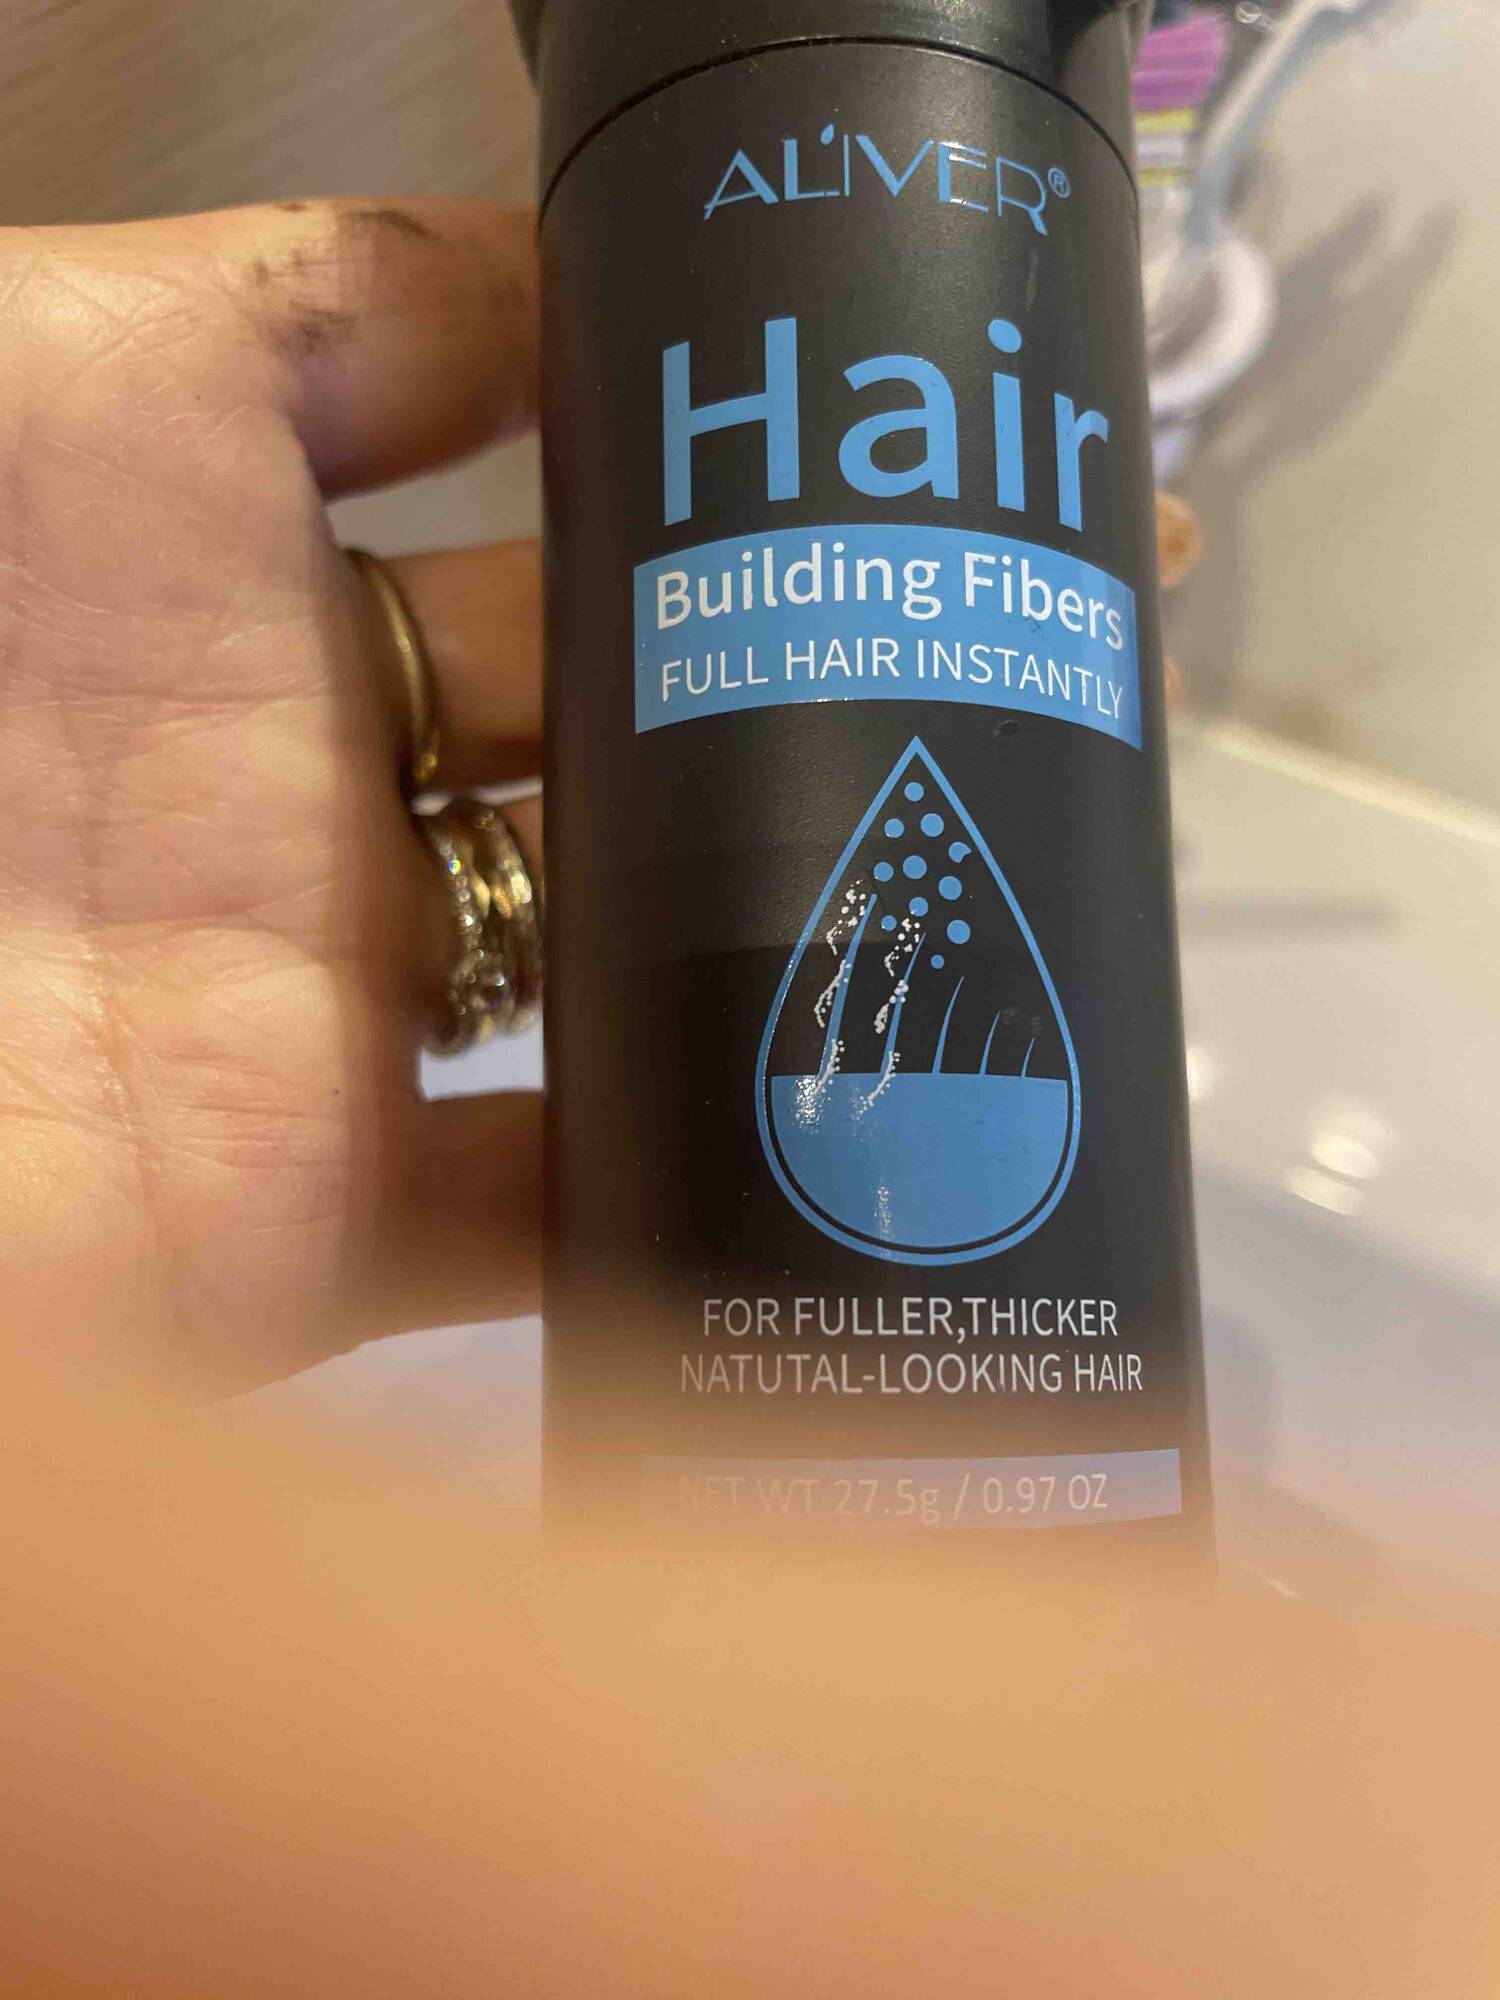 AL'IVER - Hair building fibers full hair instantly